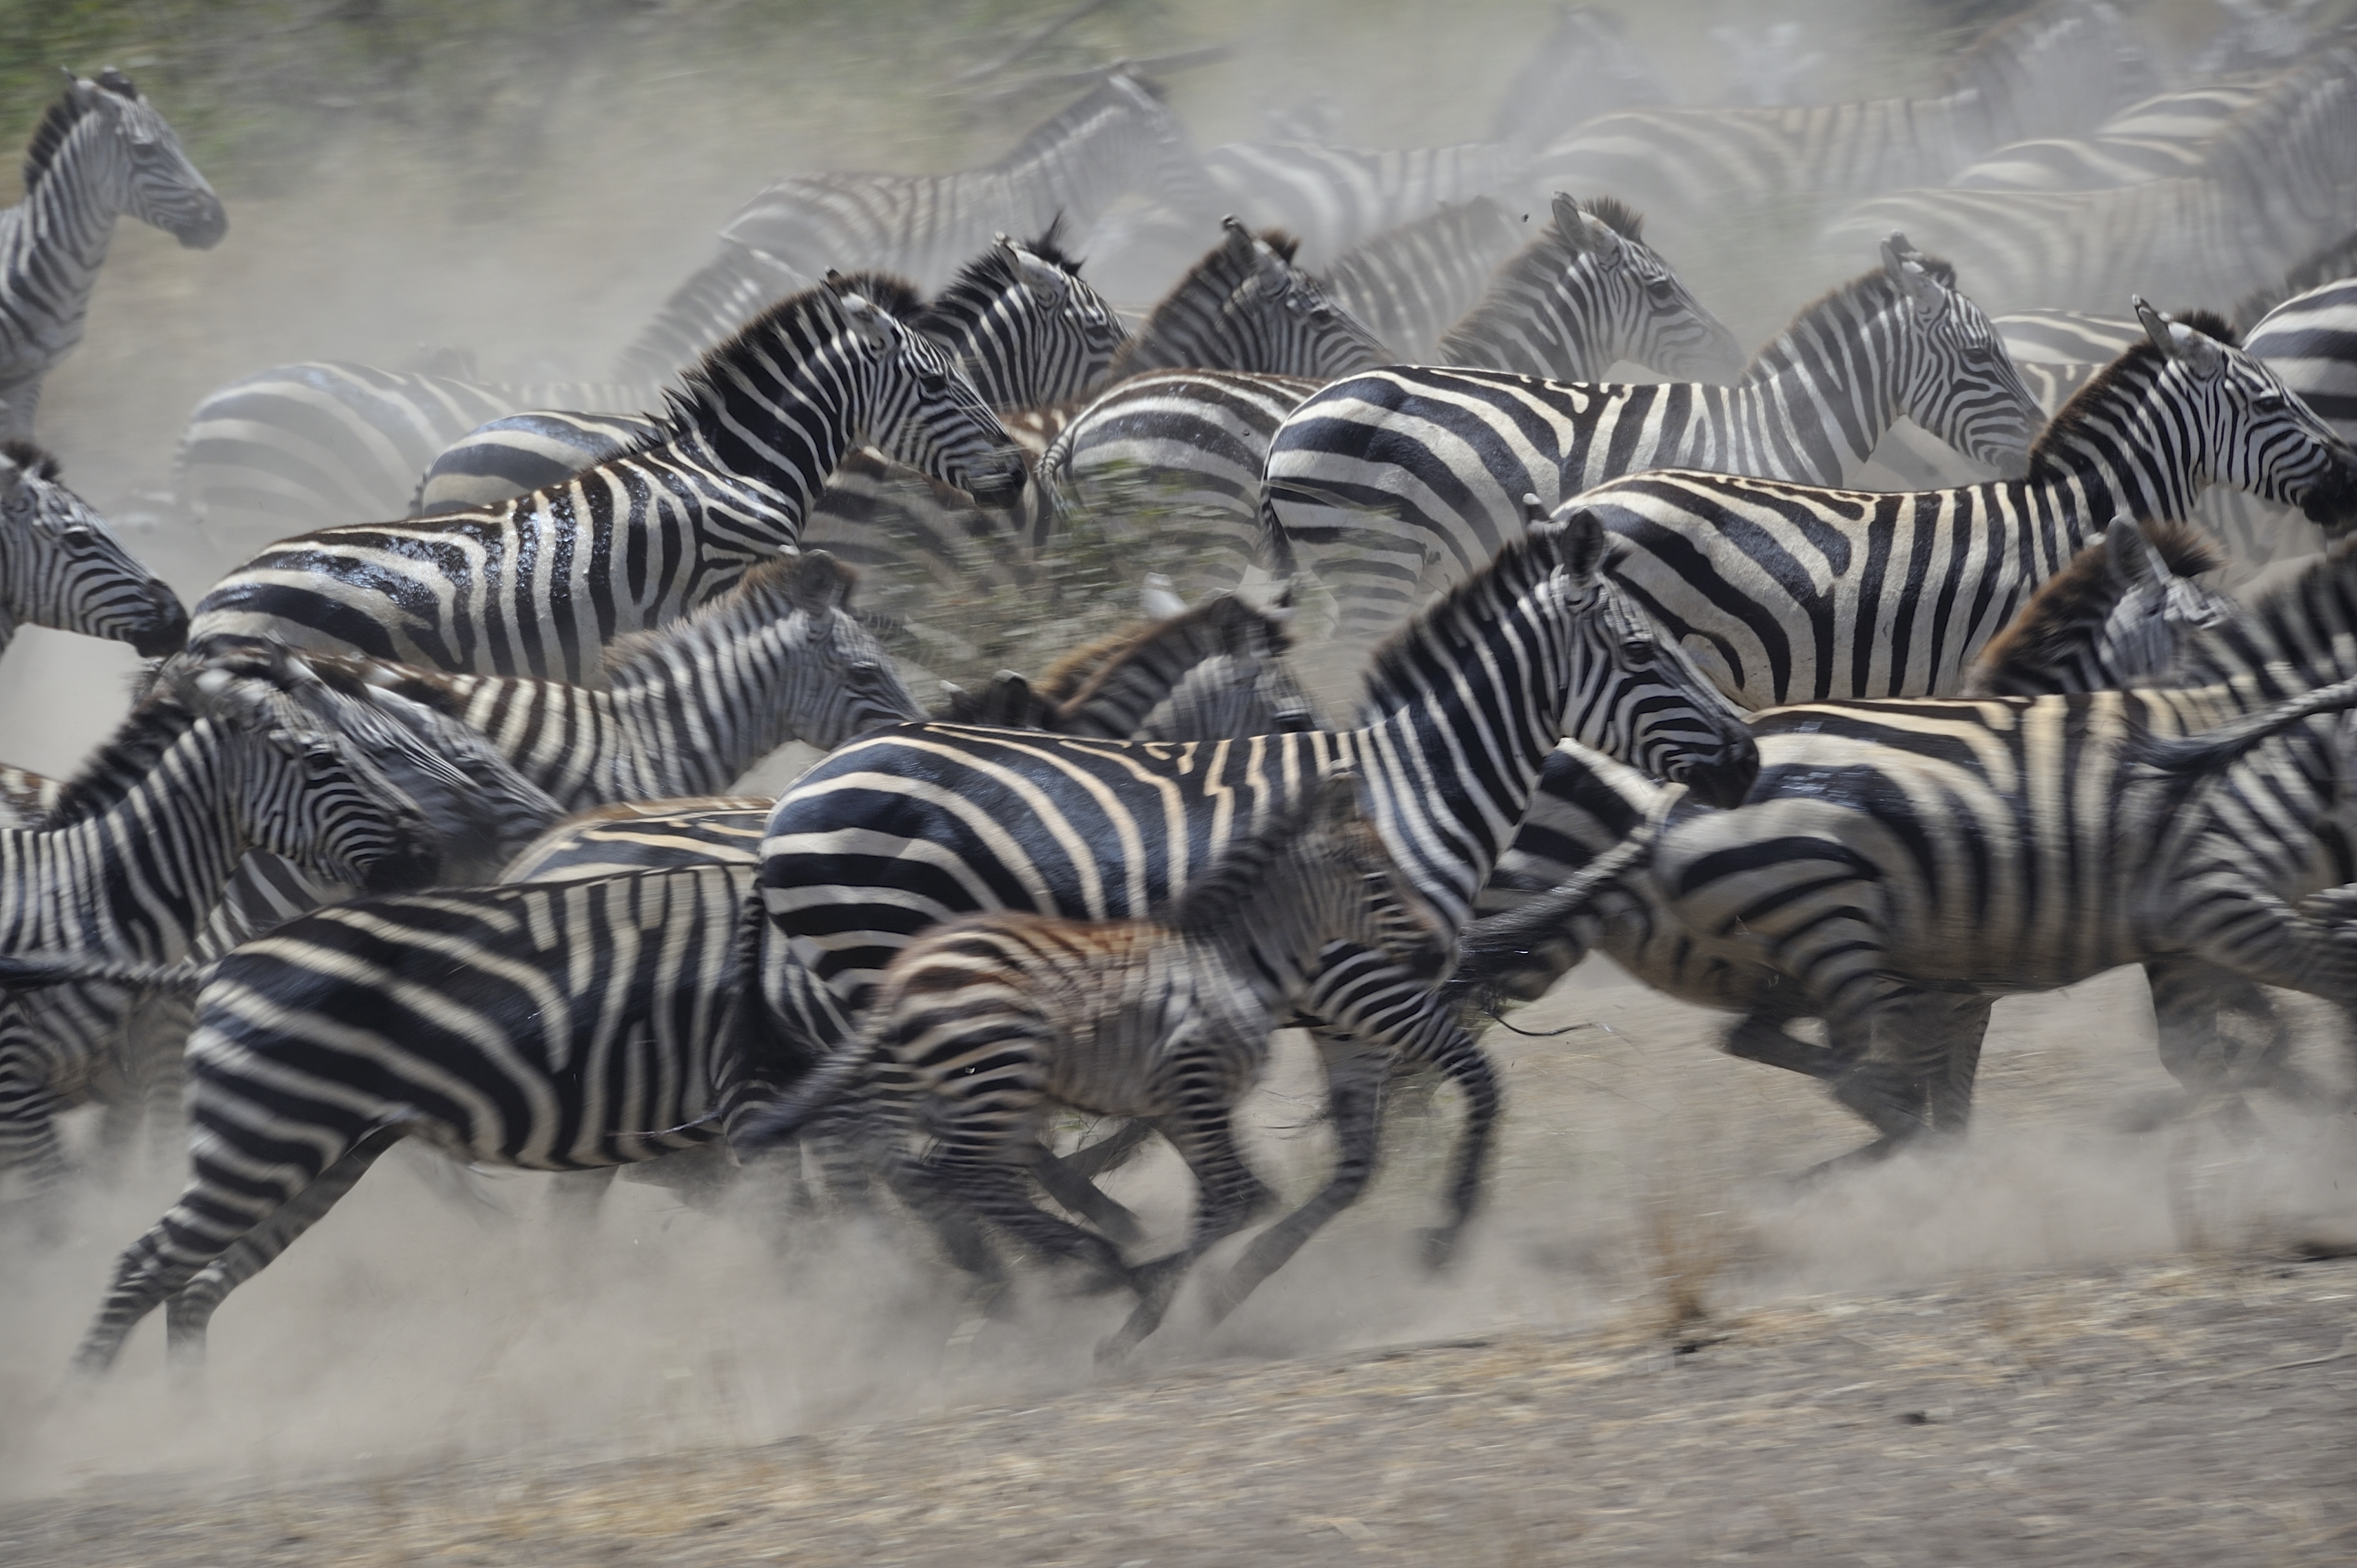 Zebra Tanzania Africa Wildlife 4256x2832